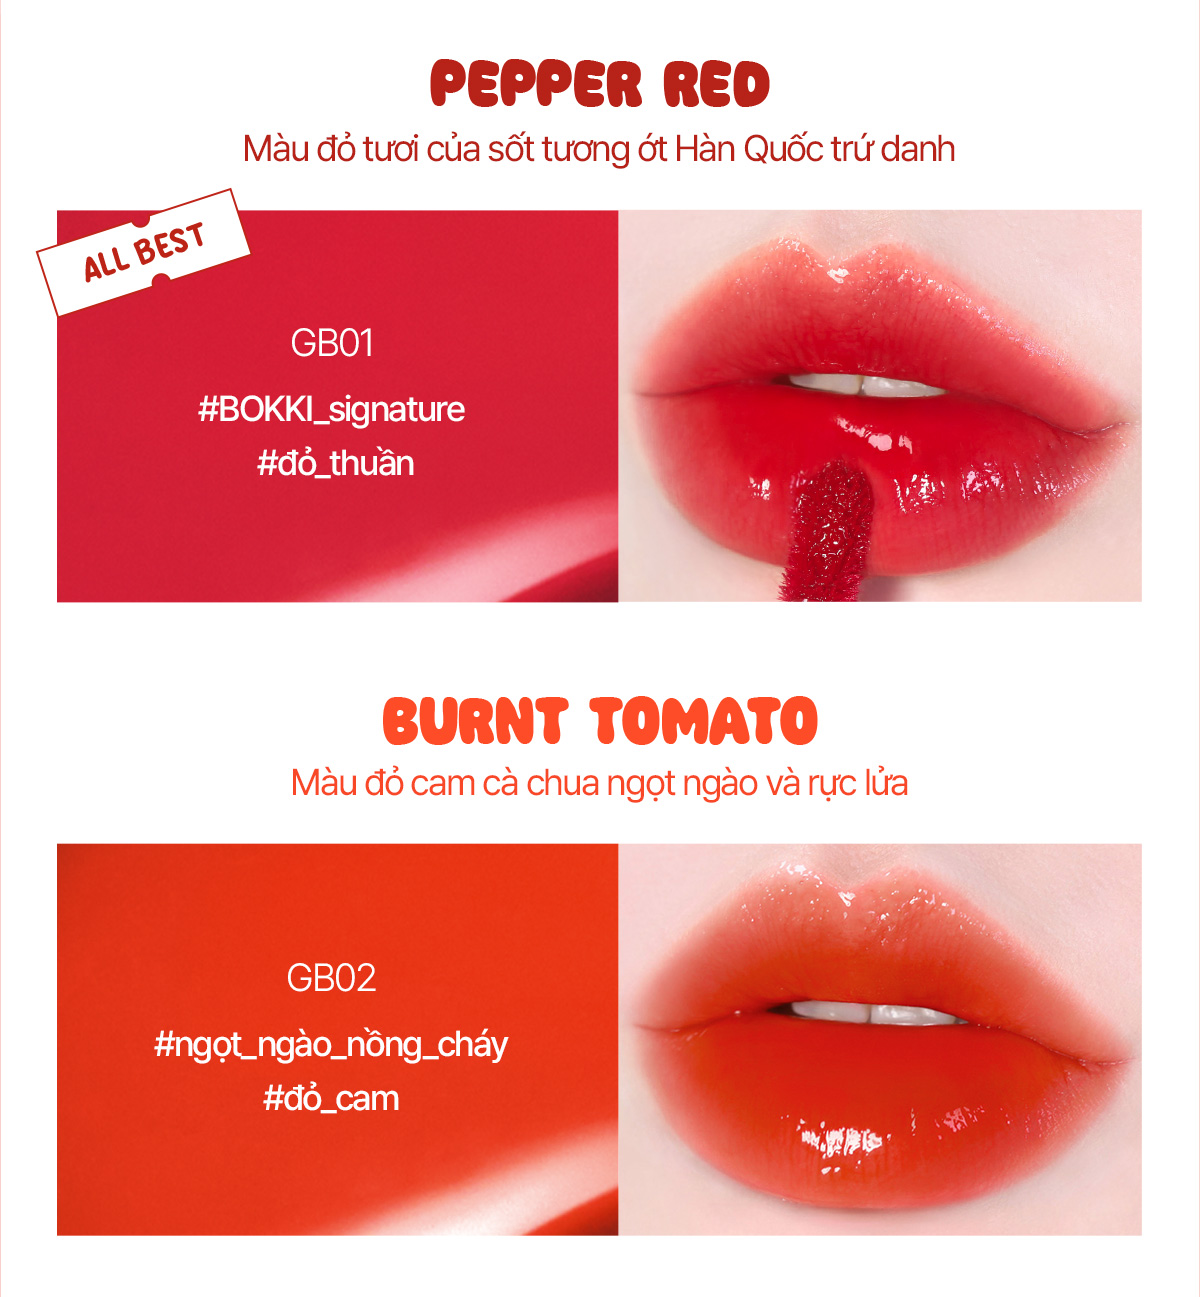 GB01 - Pepper Red